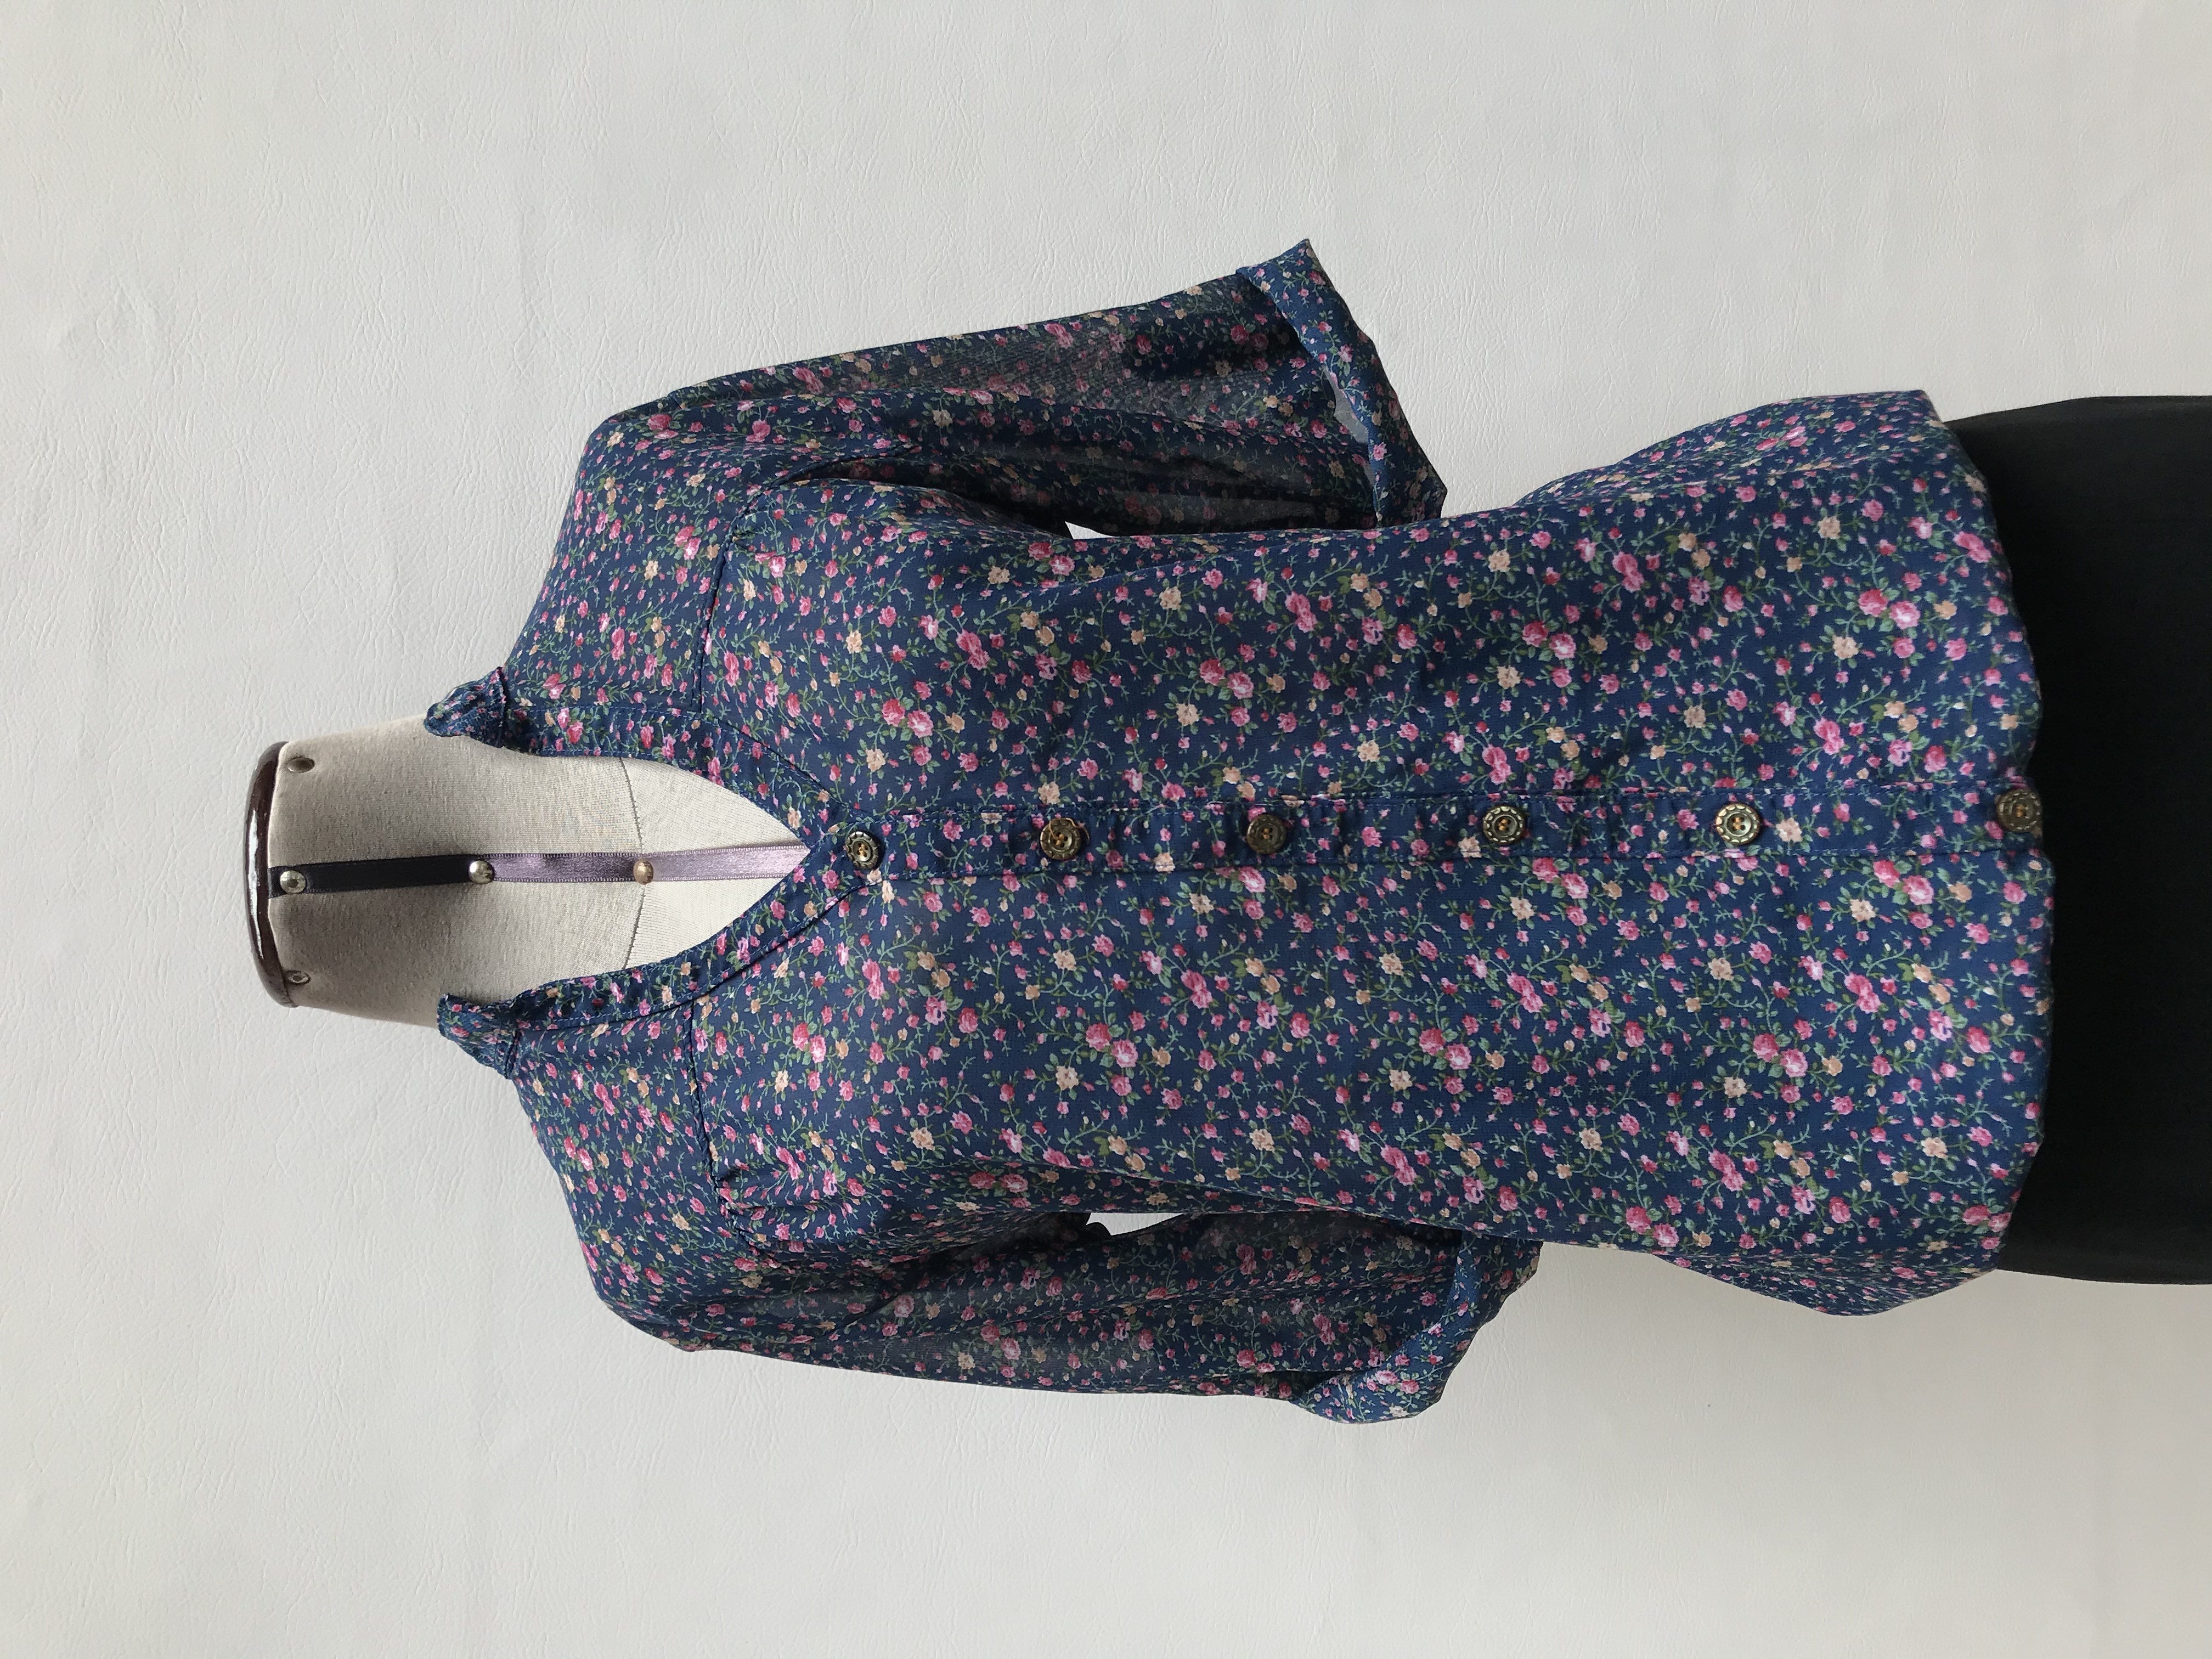 Blusa de gasa azul con estampado de flores, cuello nerú y botones centrales, elástico en la basta, manga 3/4 regulable con botón
Talla M